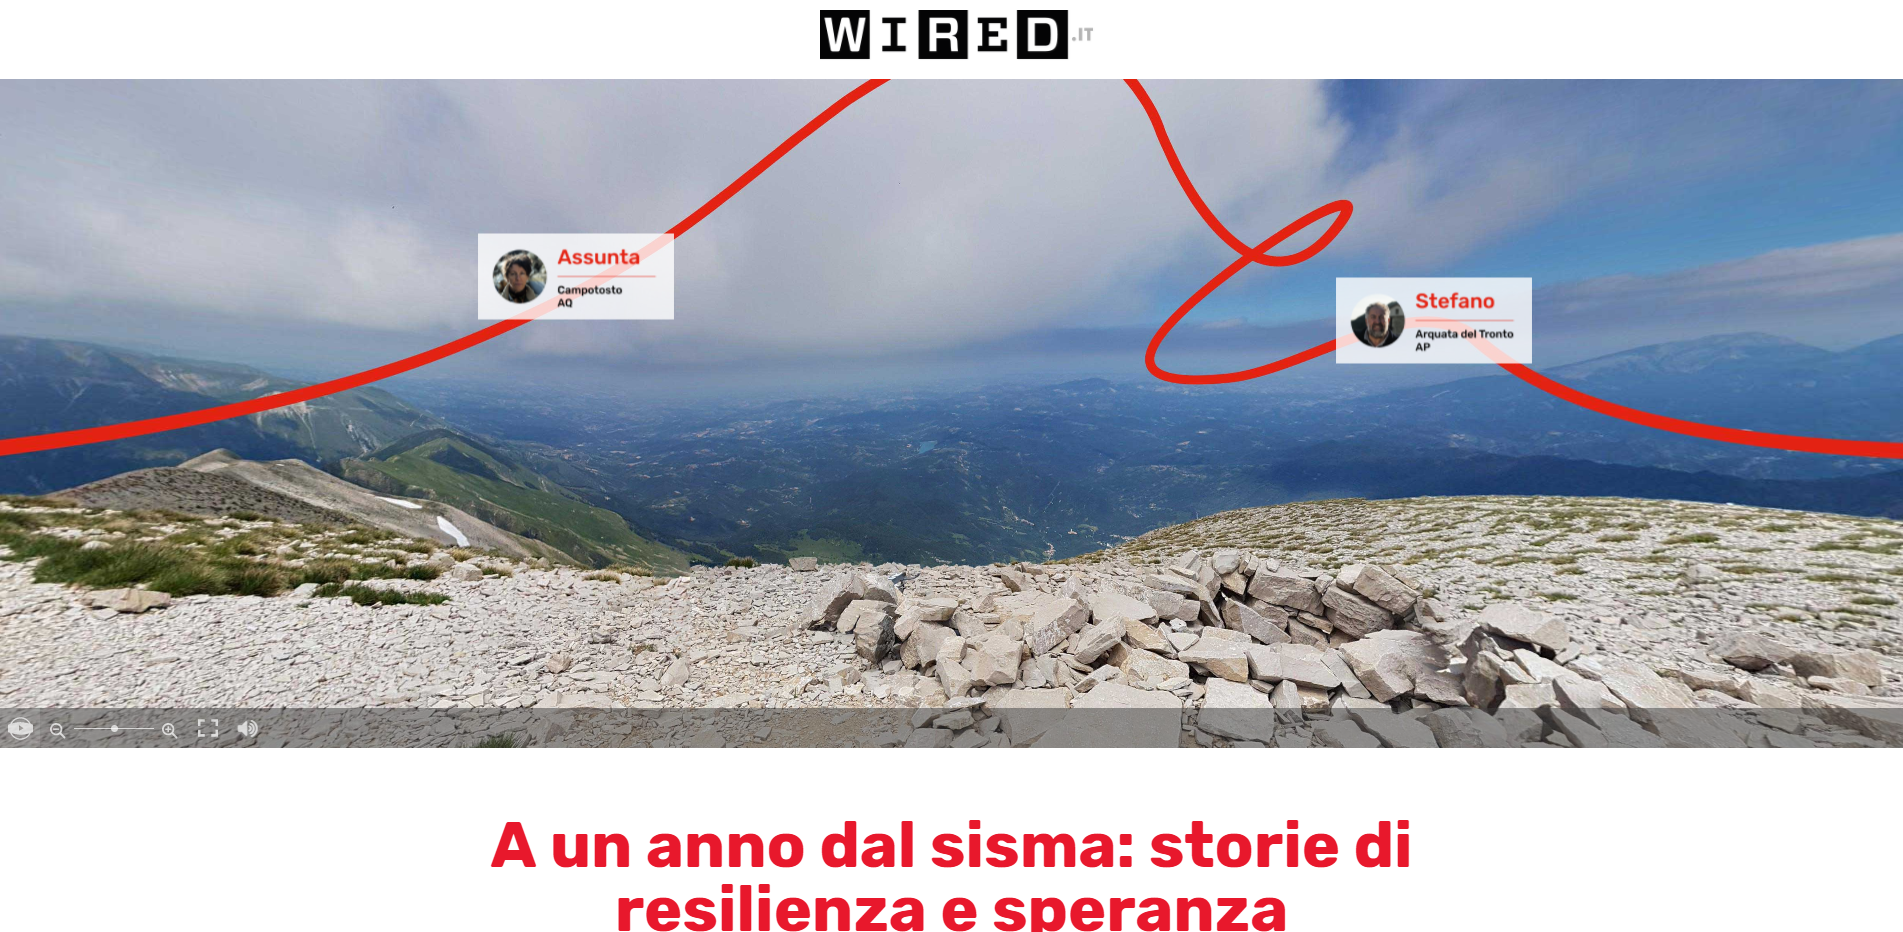 La home Page del Web Doc "Immersi nel Cratere" prodotto da Wired Italia e ActionAid e realizzato da Ivan Giordano e Manolo Luppichini